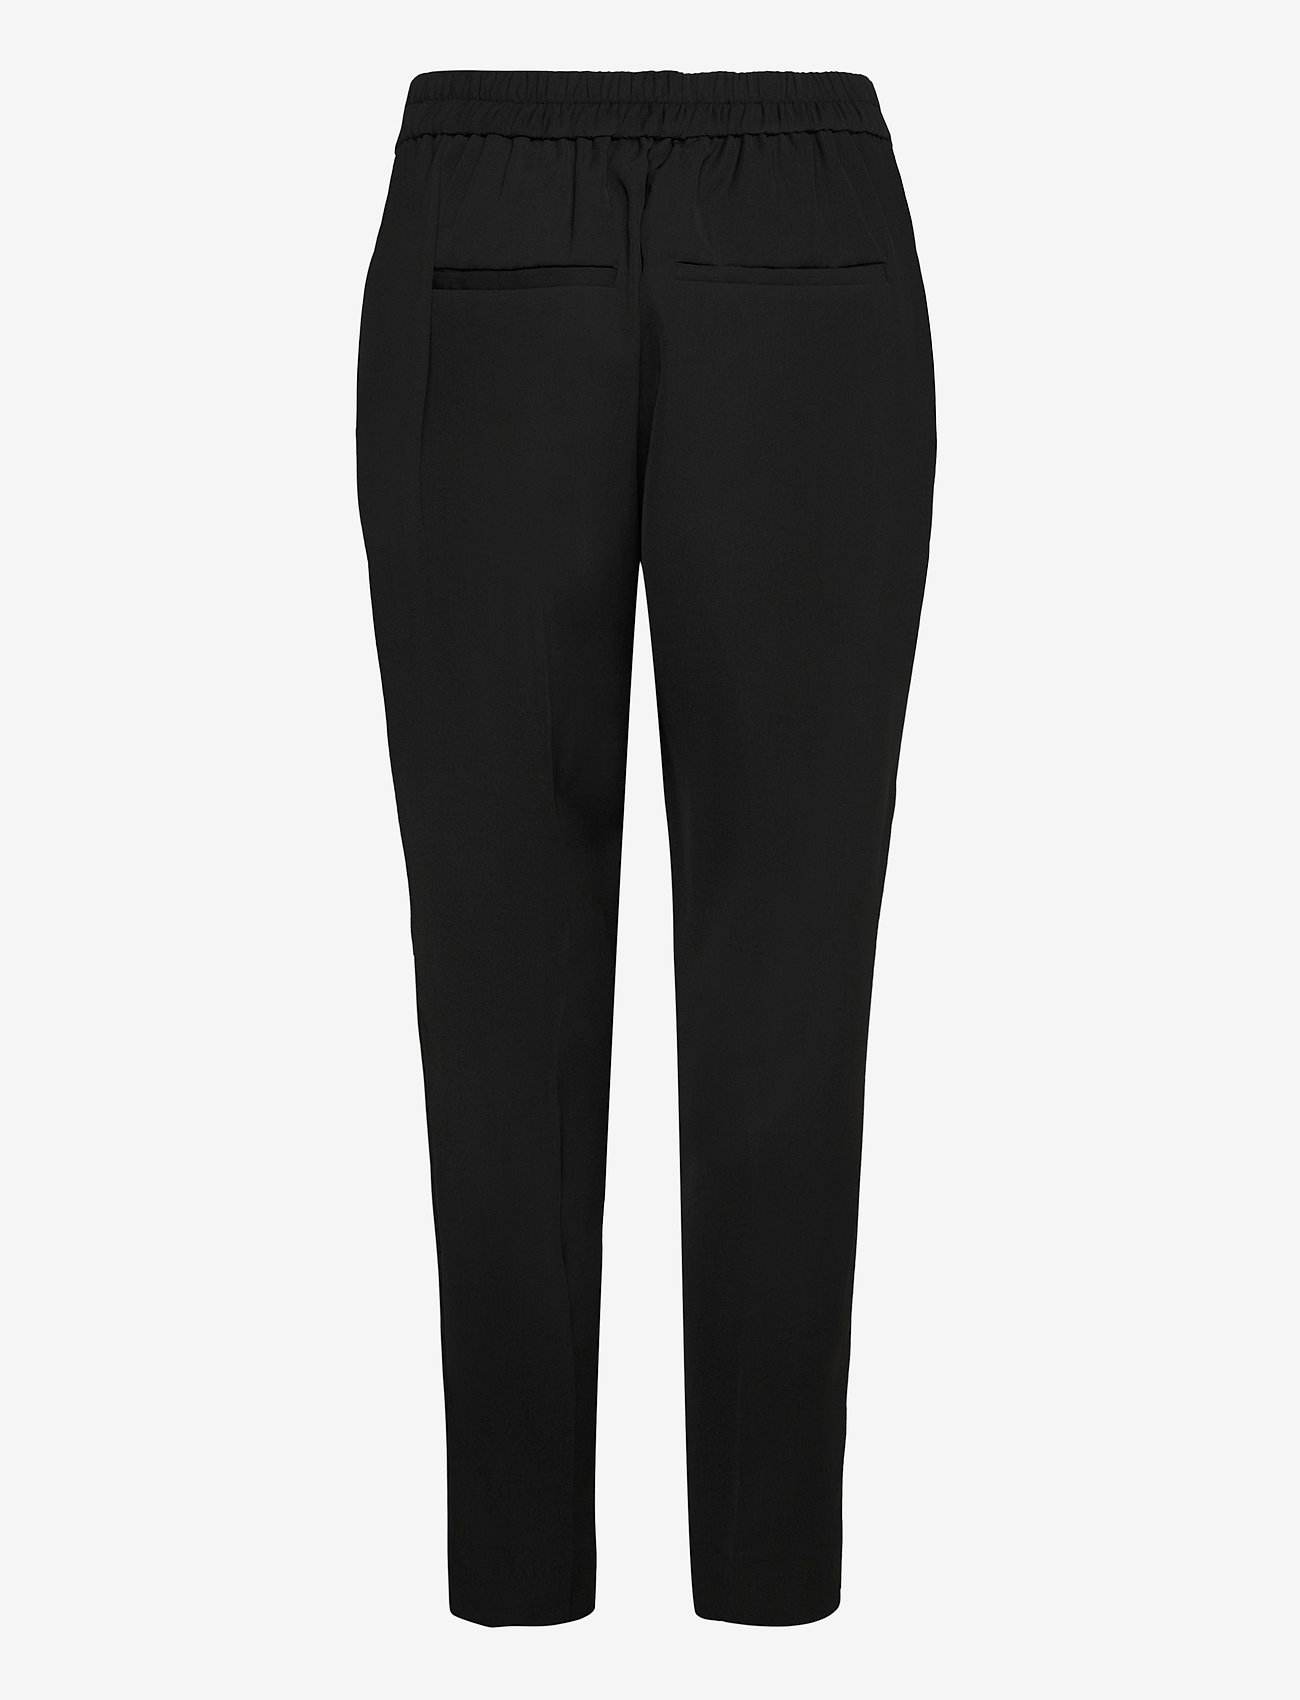 Second Female - Garbo Trousers - bukser med lige ben - black - 1